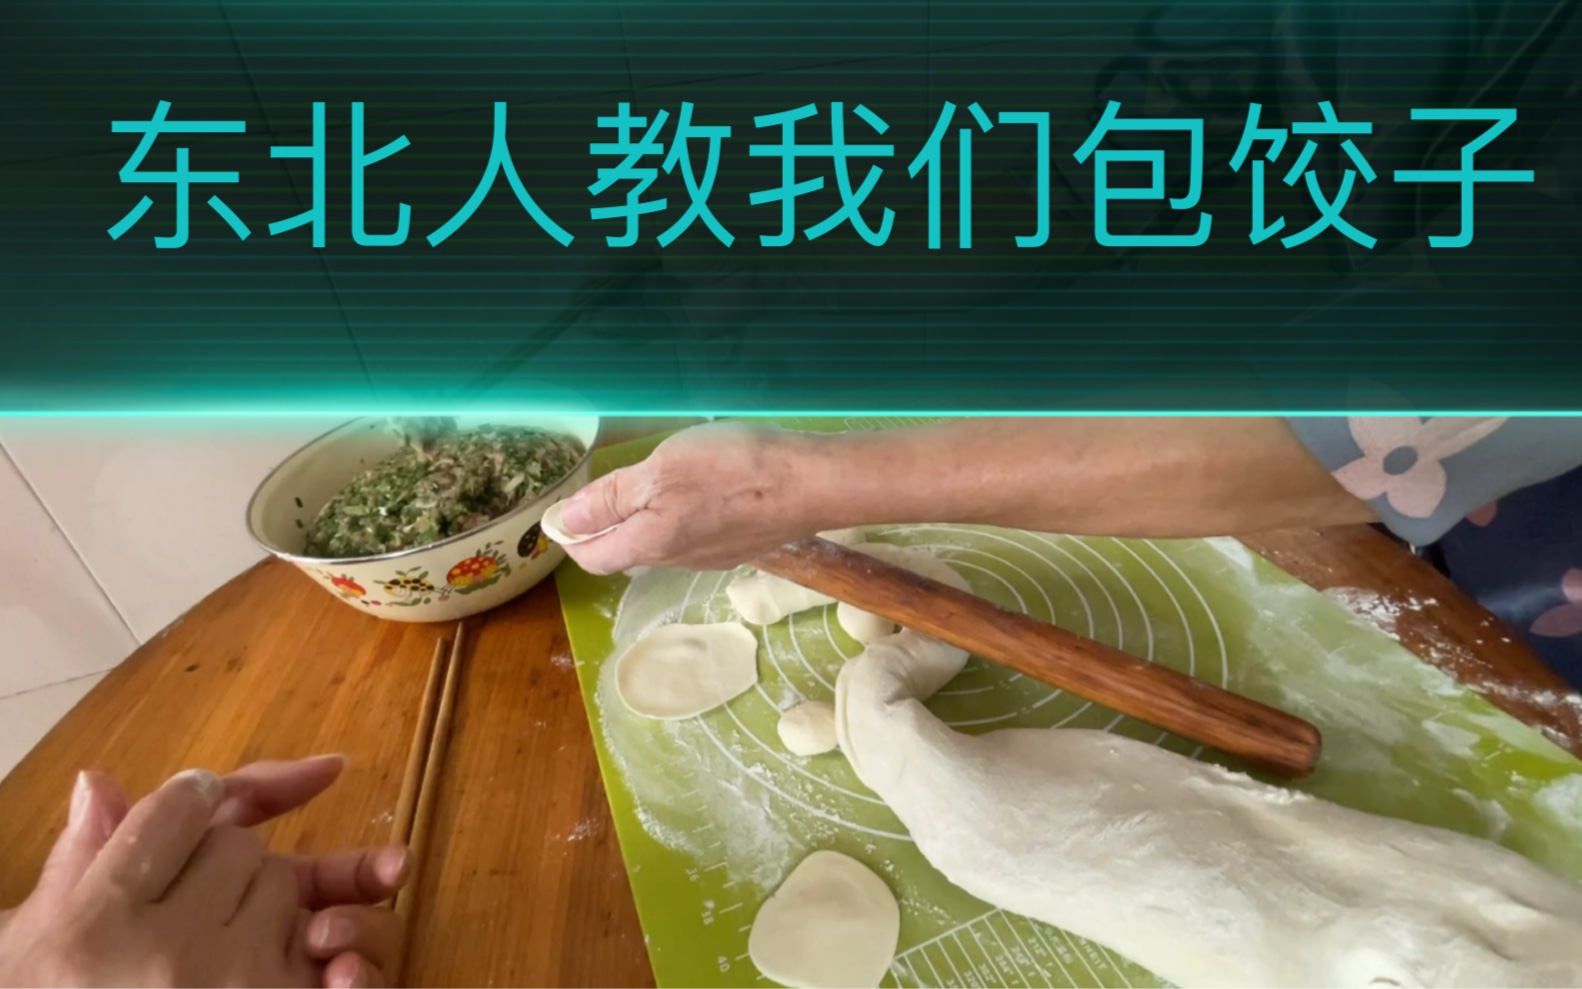 第一次碰到幽默的男人教我们包饺子,你也跟着视频来学学吧